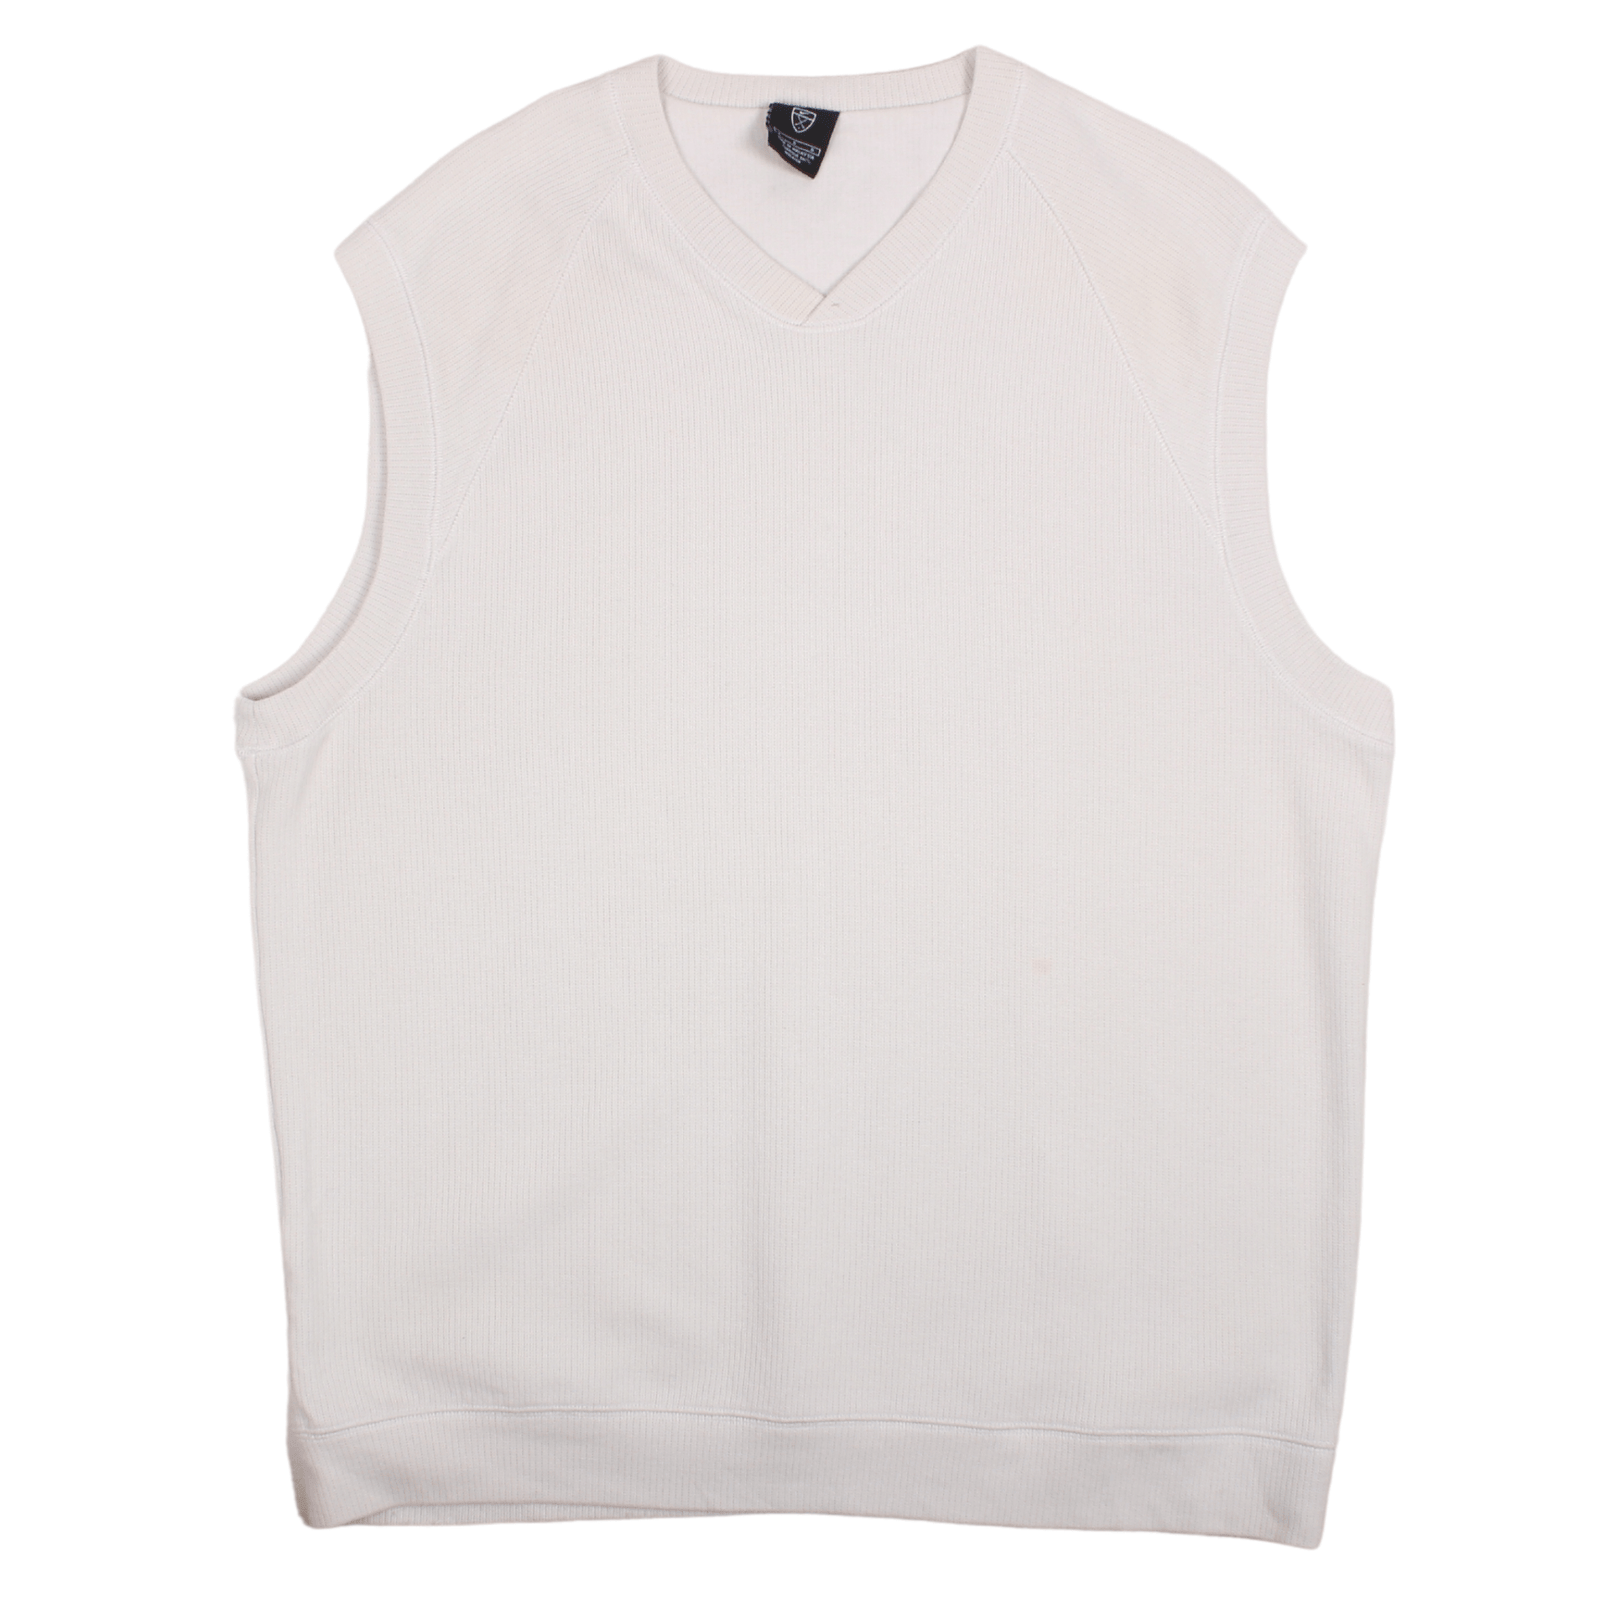 Vintage Nike Sleeveless Sweatshirt (M)